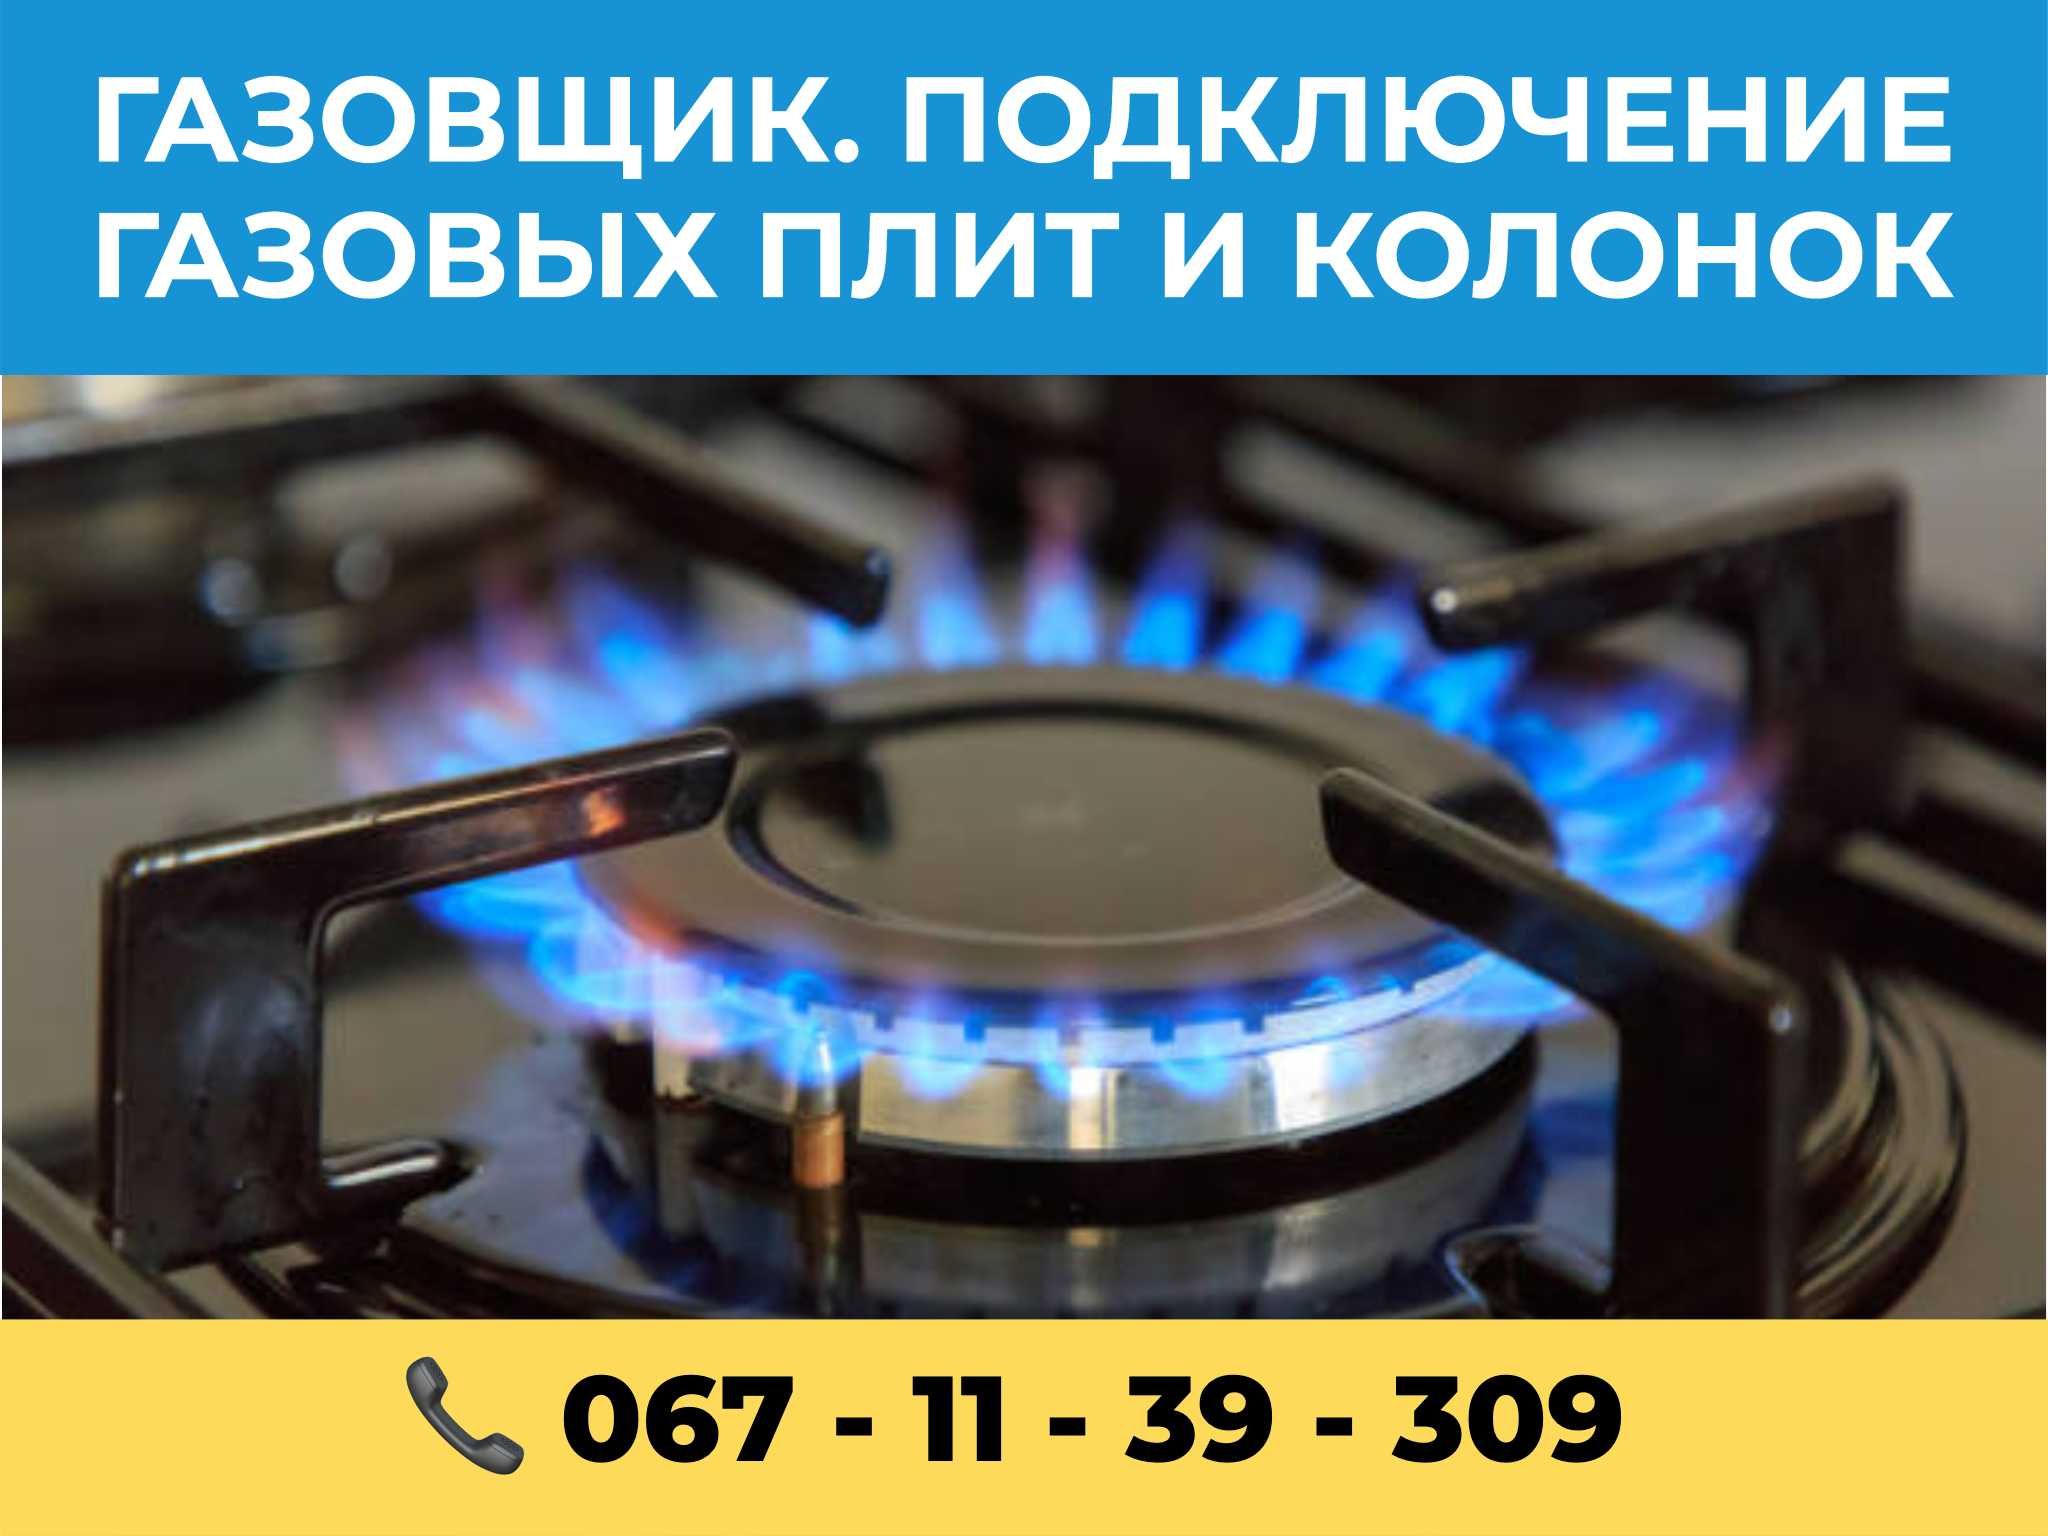 Подключение и обслуживание Газовых плит, колонок и котлов в Запорожье